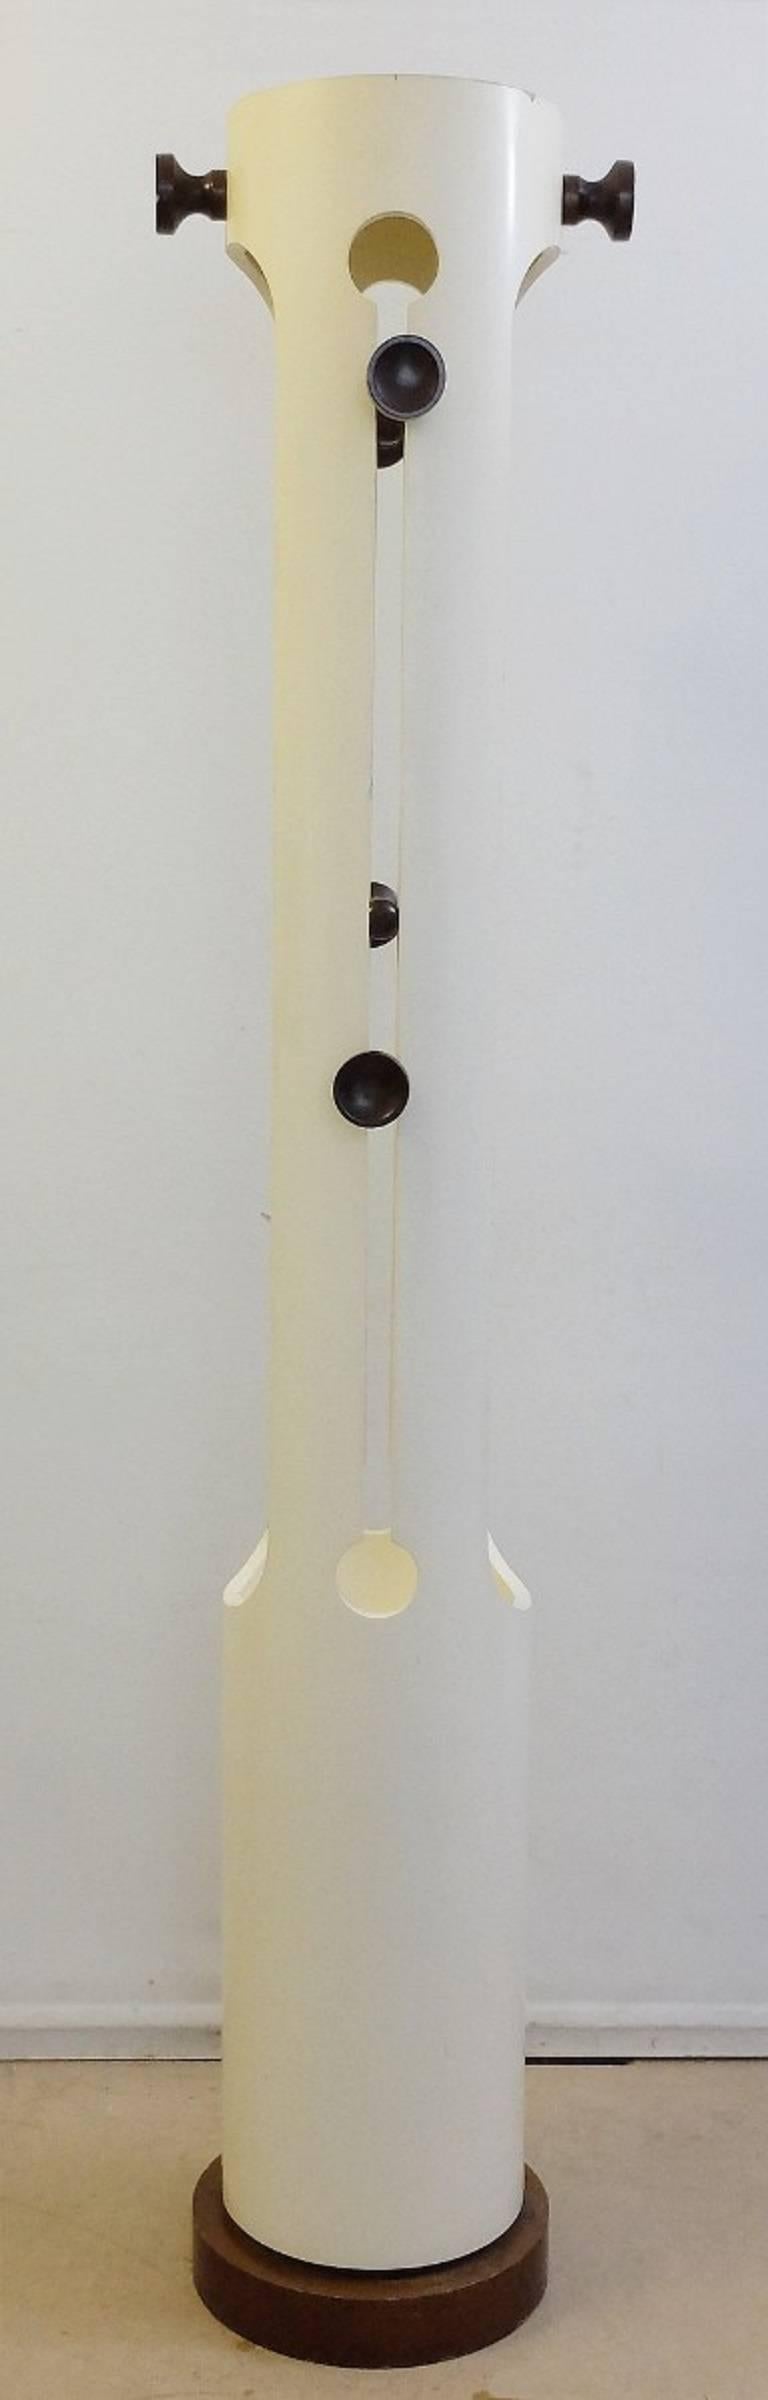 Italienischer Garderobenständer in TOTEM-Form aus lackiertem Holz, Carlo De Carli zugeschrieben, um 1960.